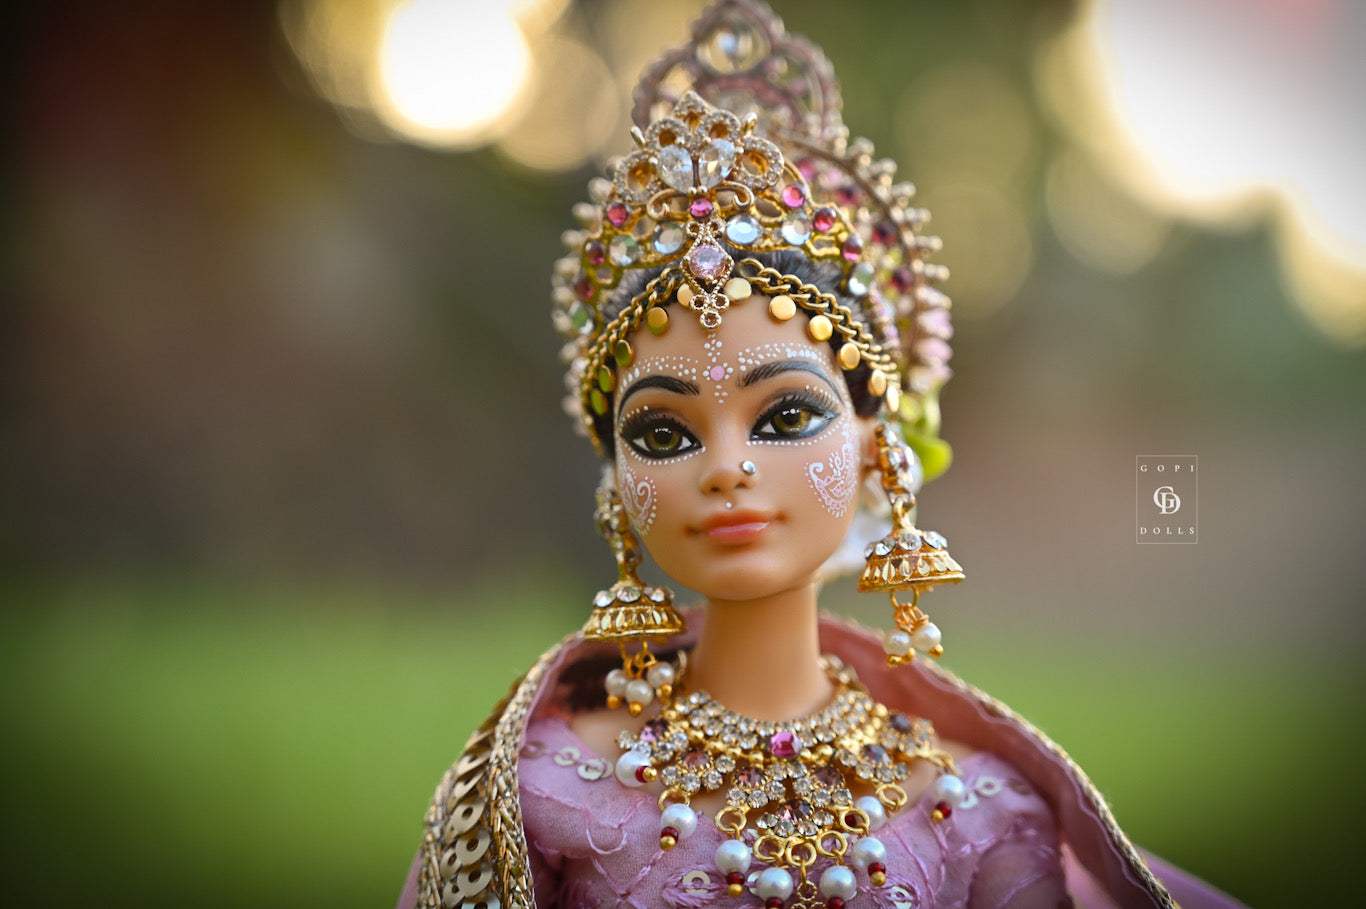 Queen Rohini | Gopi Doll